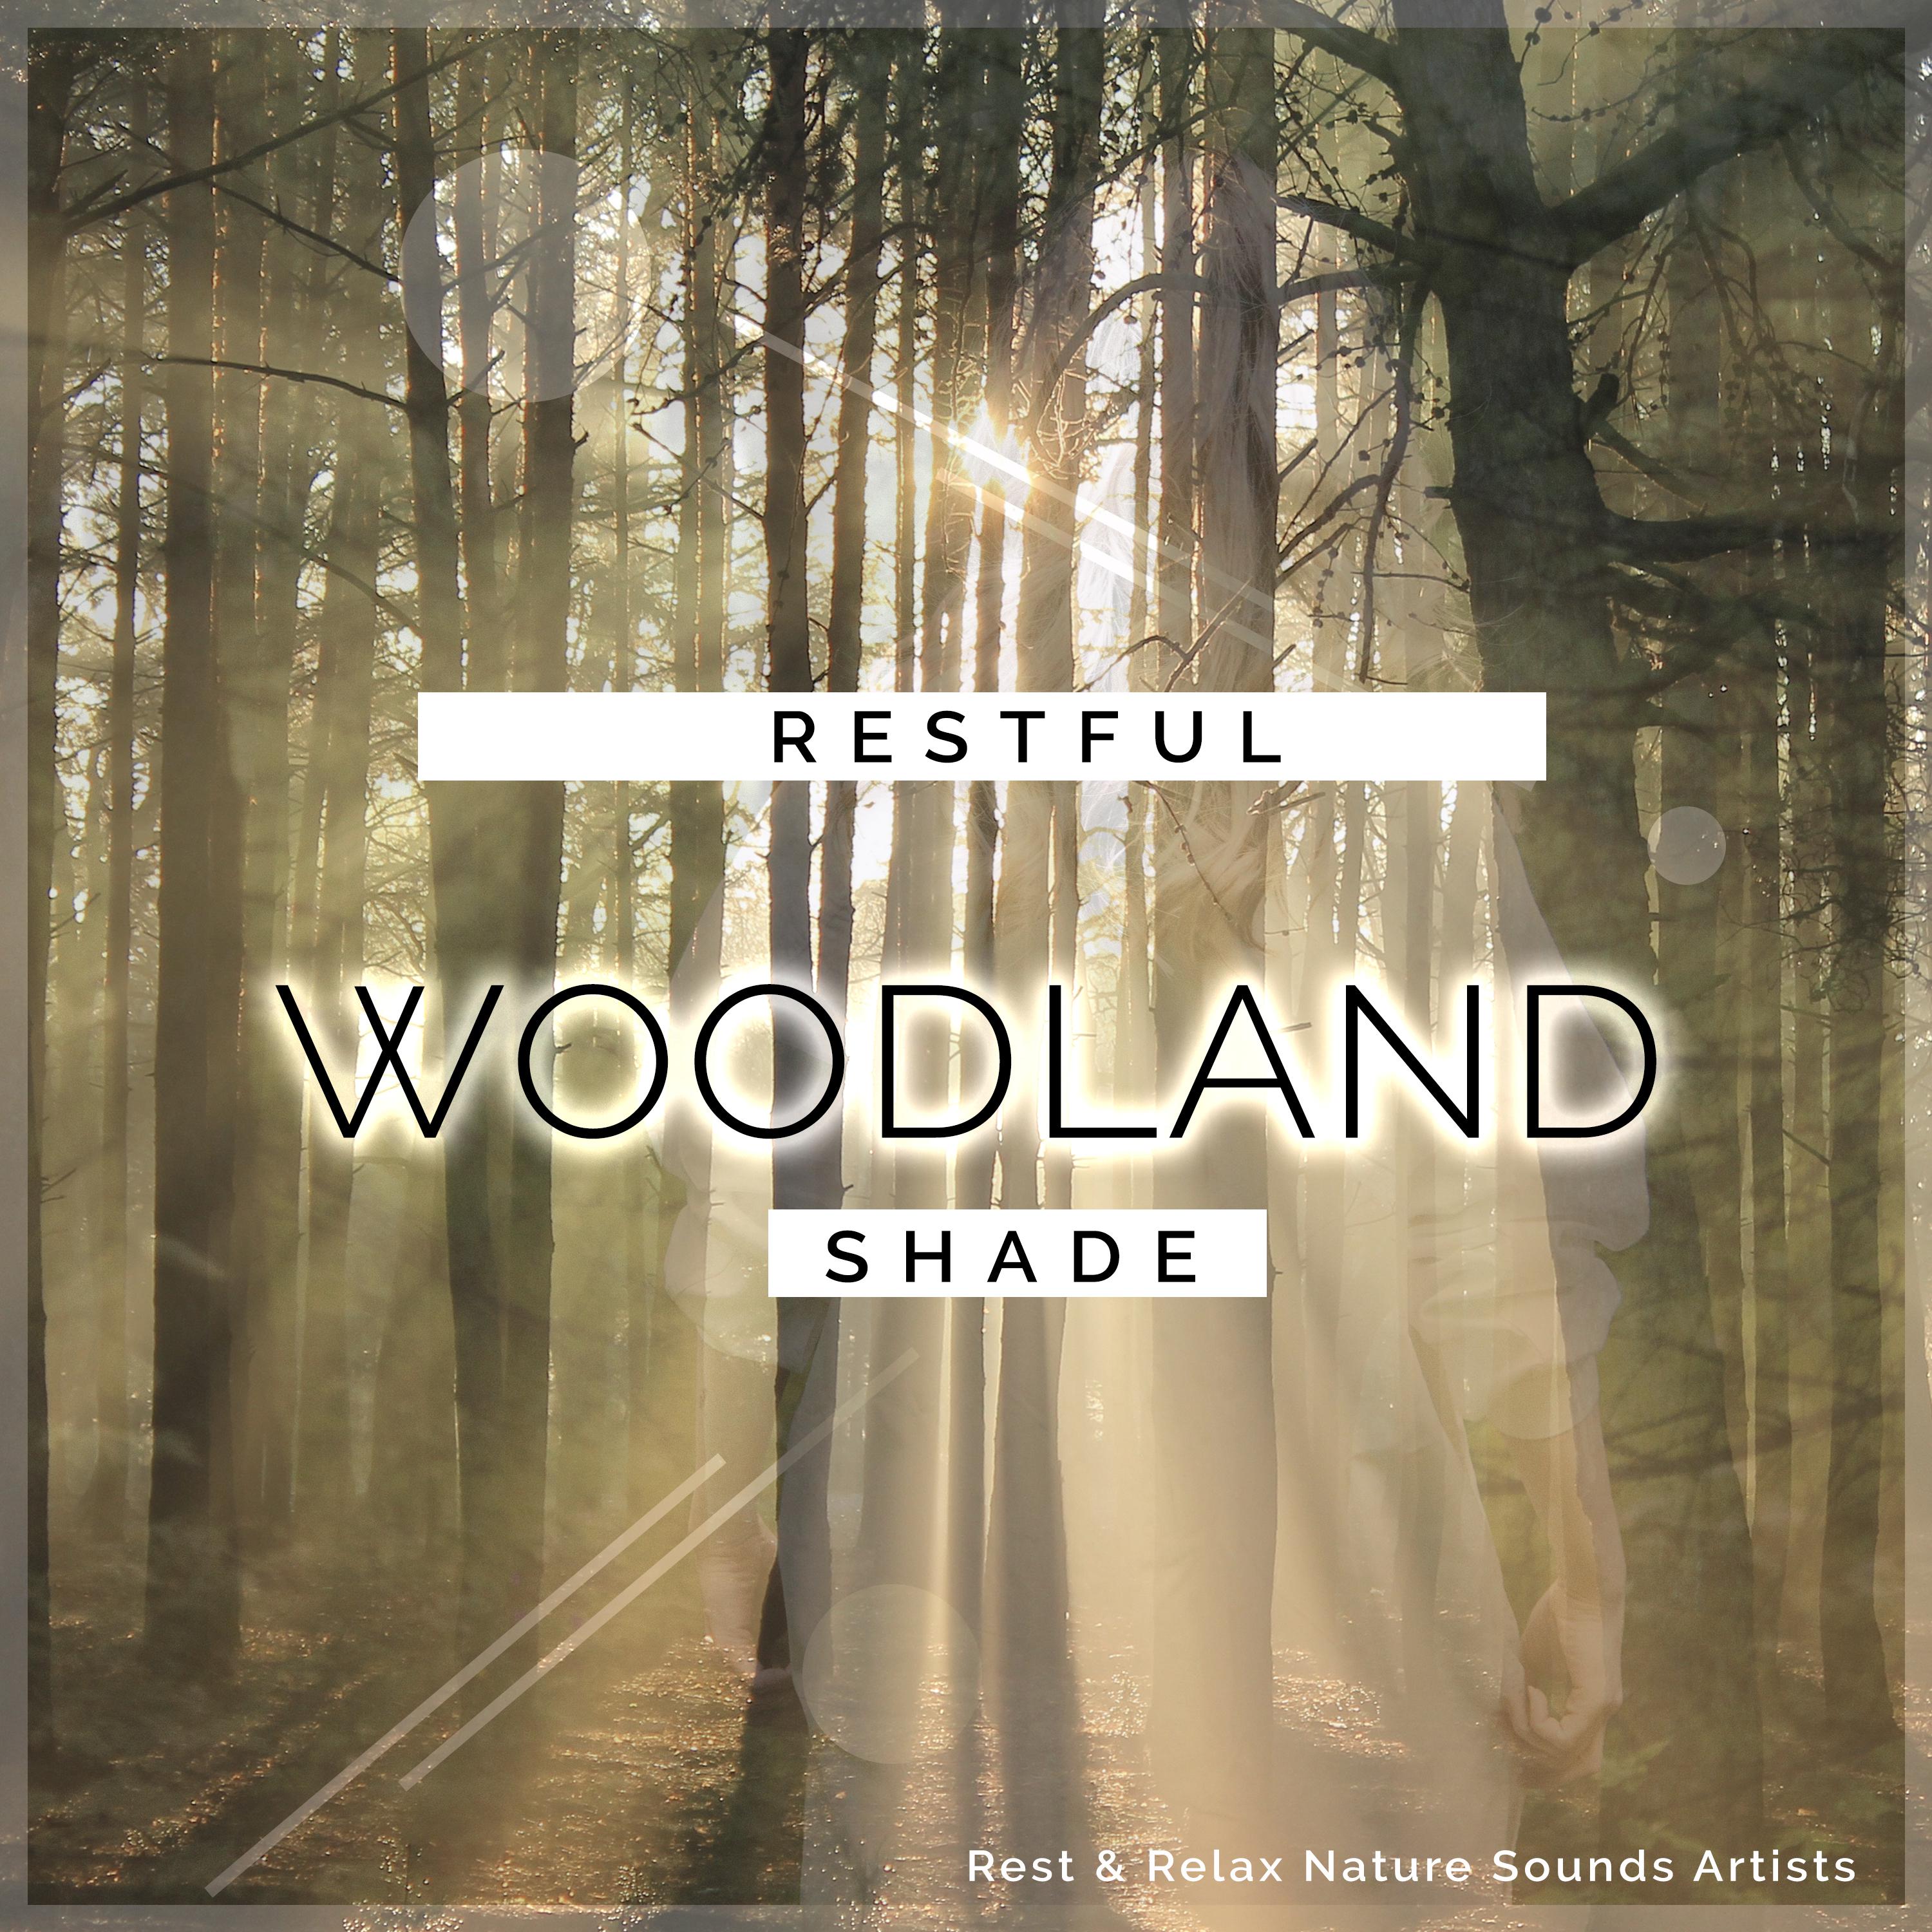 Restful Woodland Shade